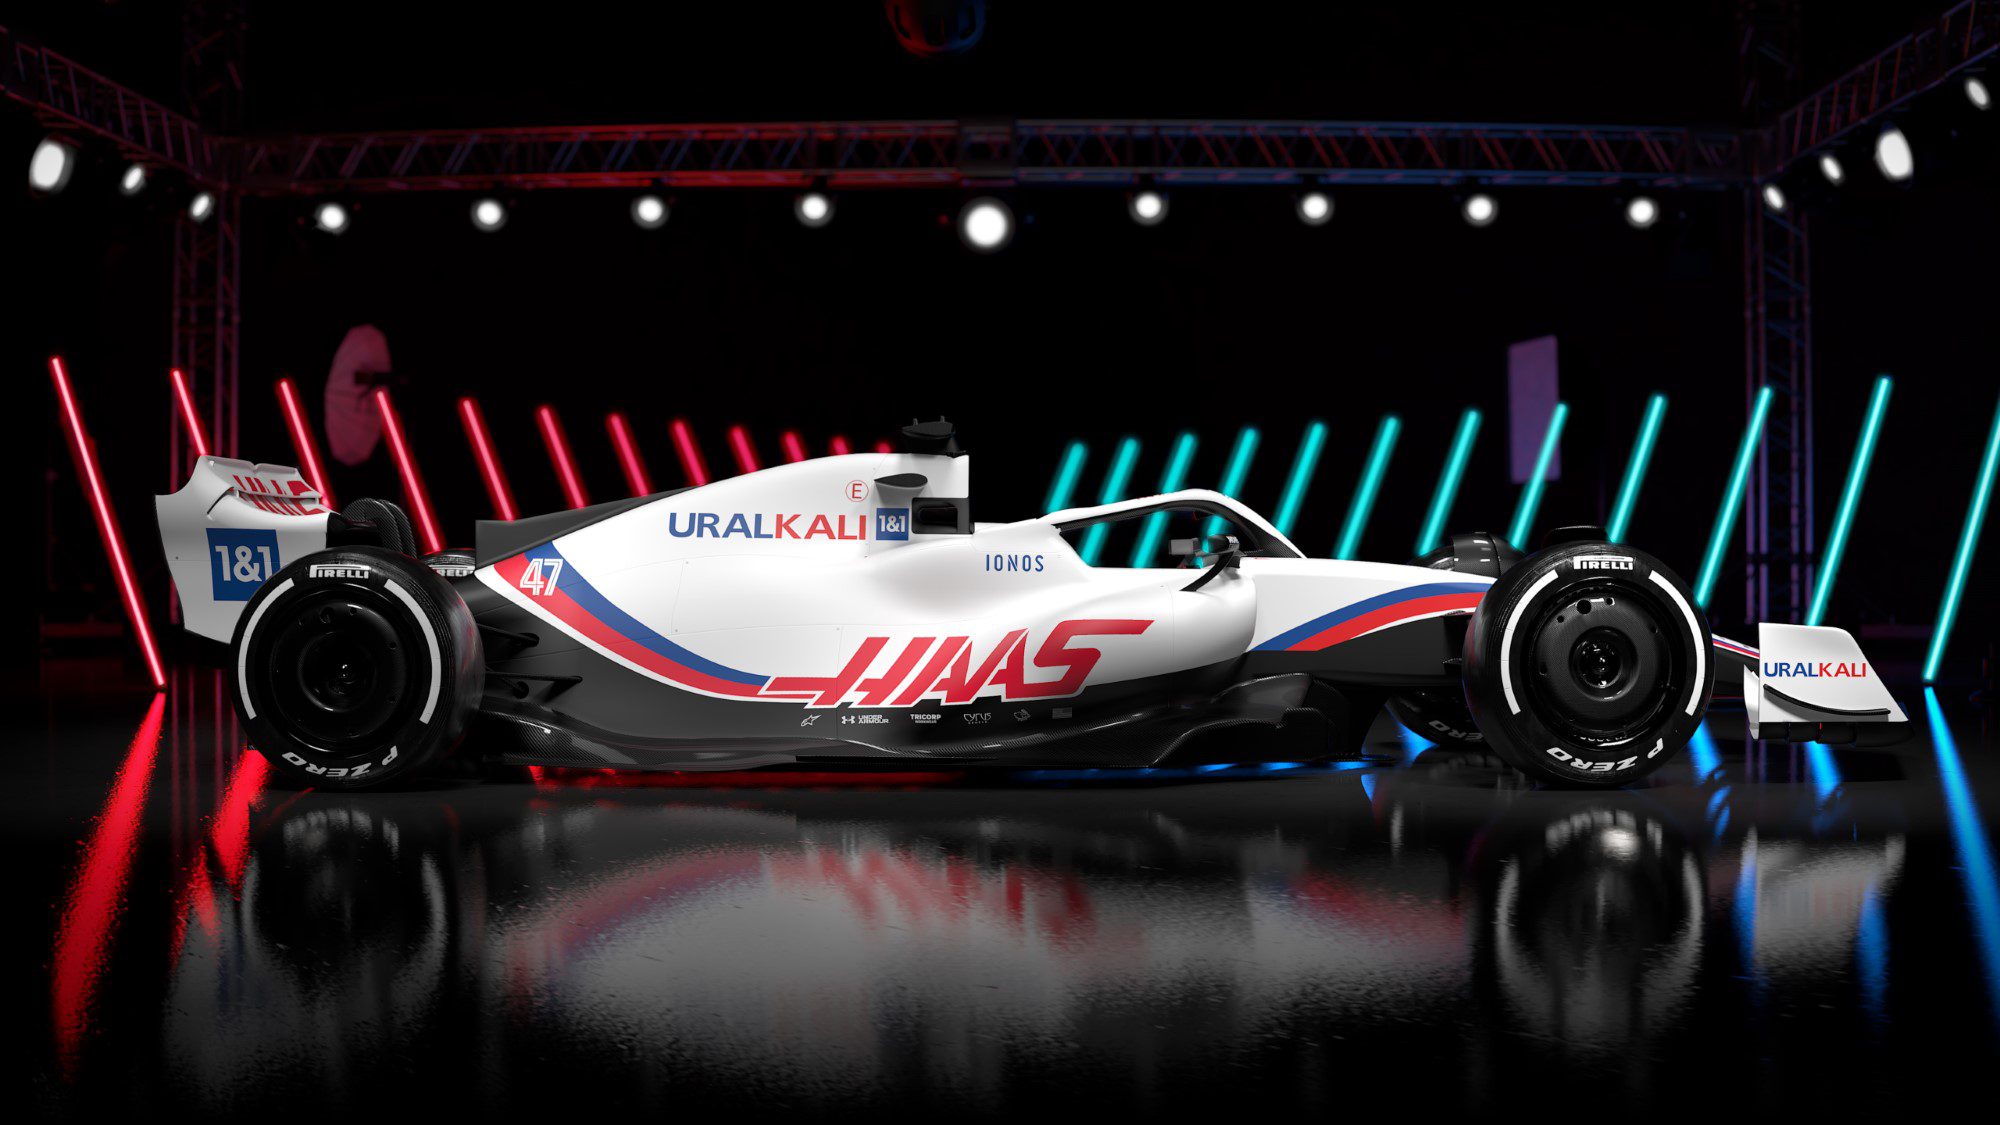 Galeria confira as imagens do Haas VF22 para a F1 2022 Notícia de F1